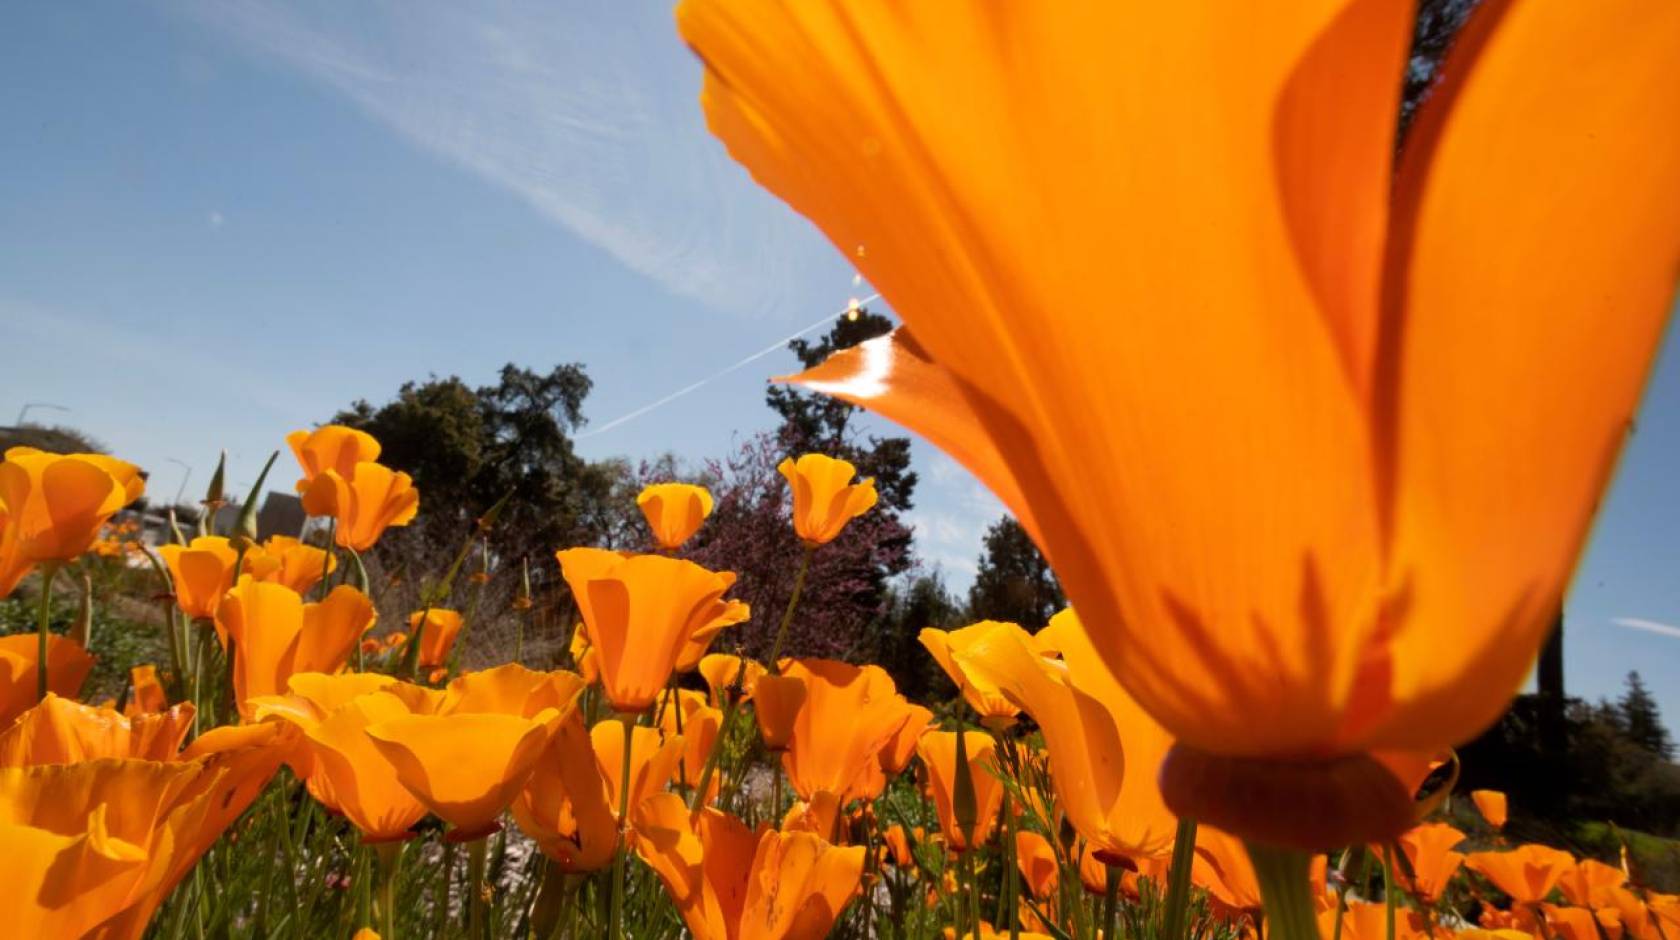 Orange California poppies blooming at the UC Davis Arboretum